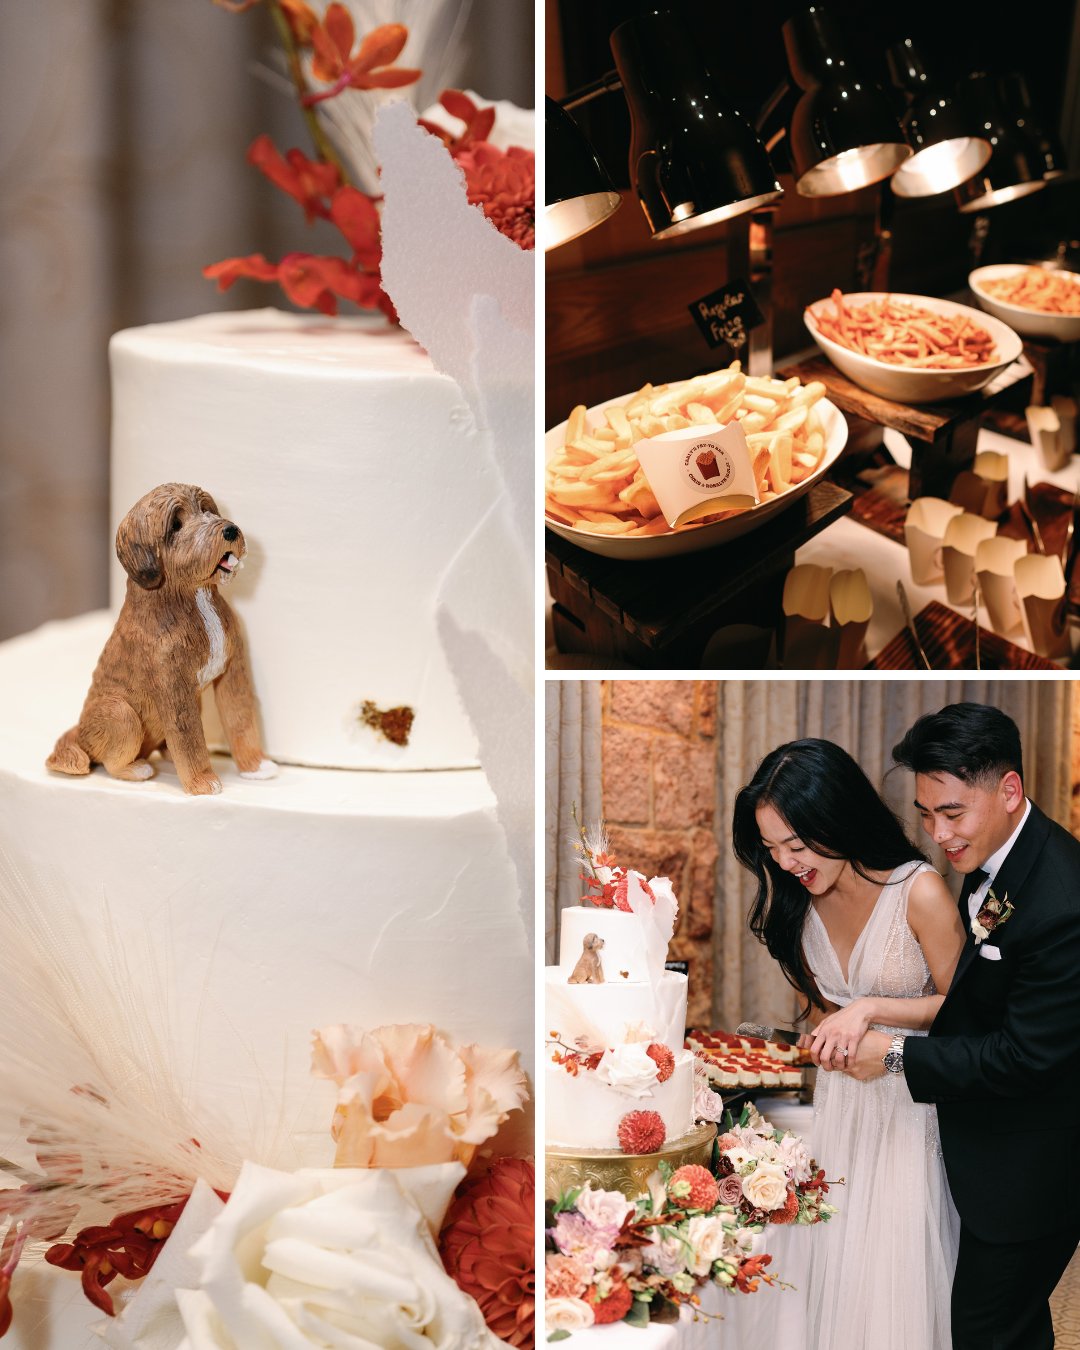 dog figurine on wedding cake, couple cutting cake, fry bar